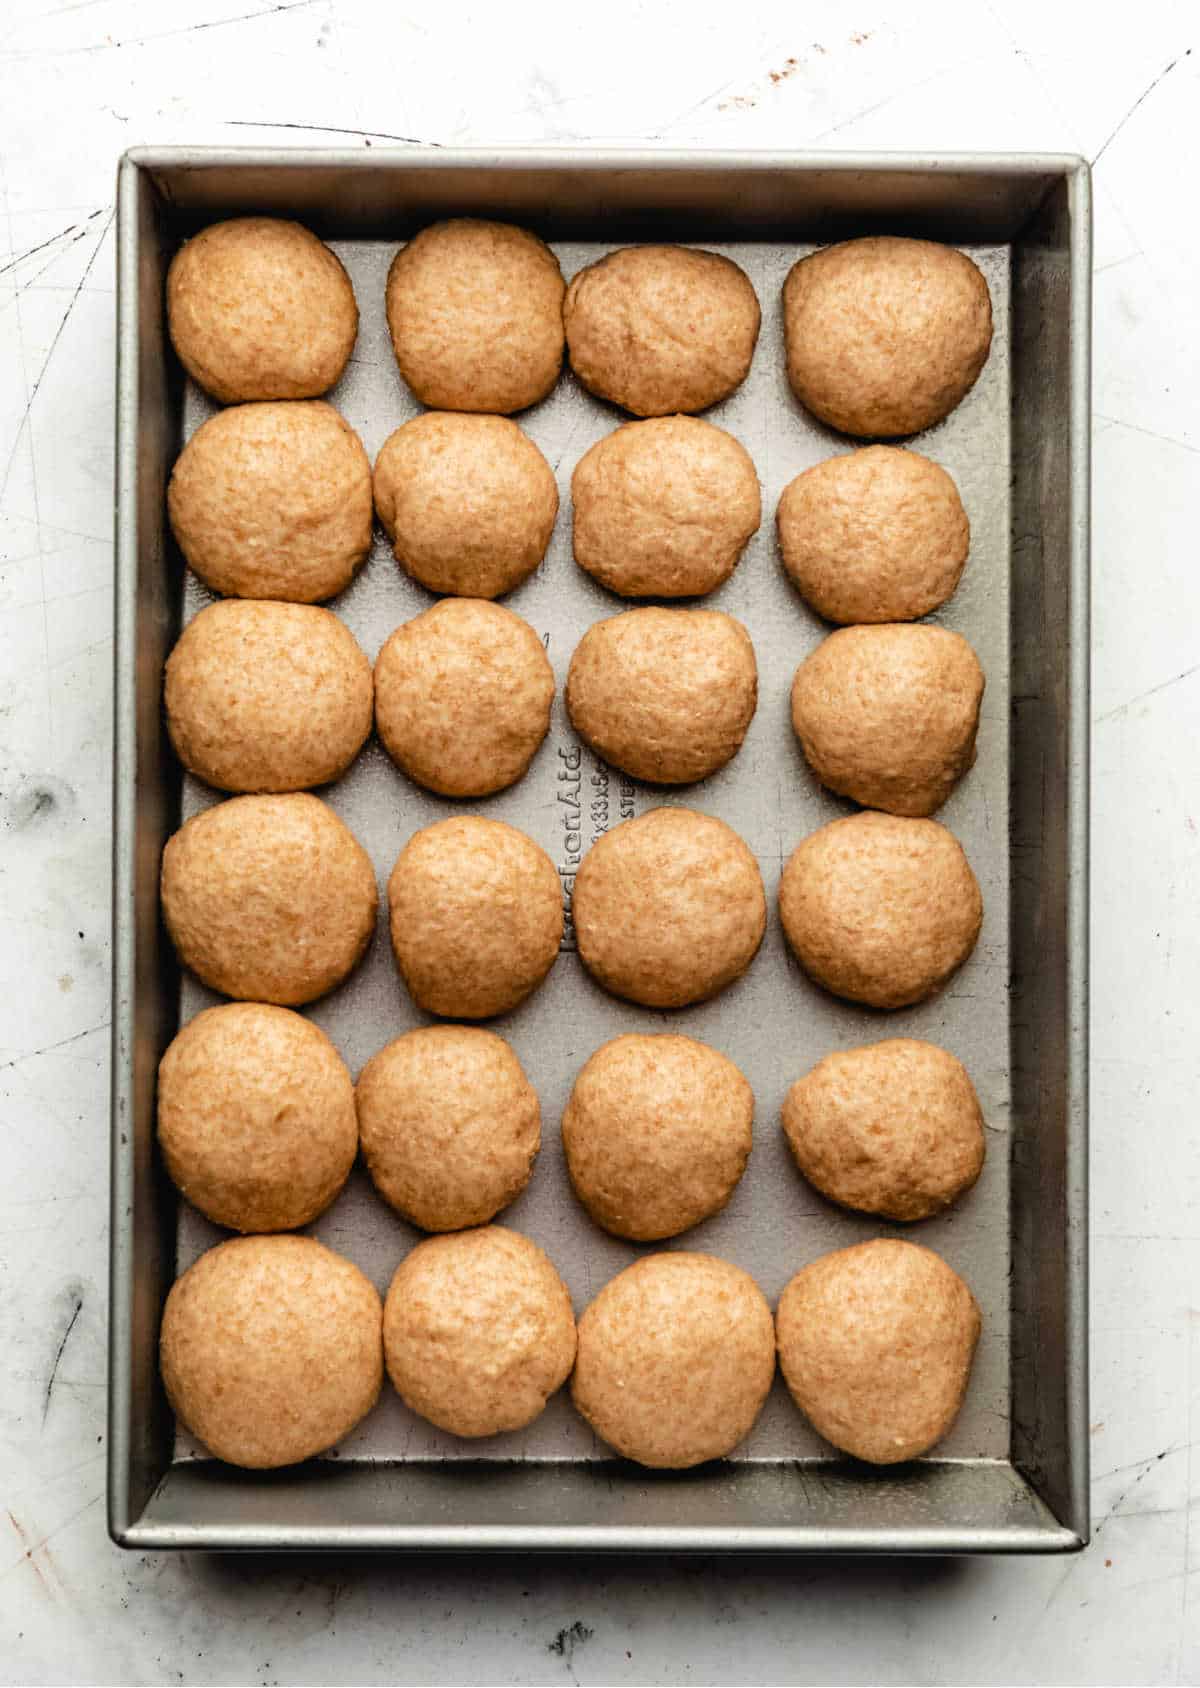 Twenty four unrisen rolls in a baking pan. 